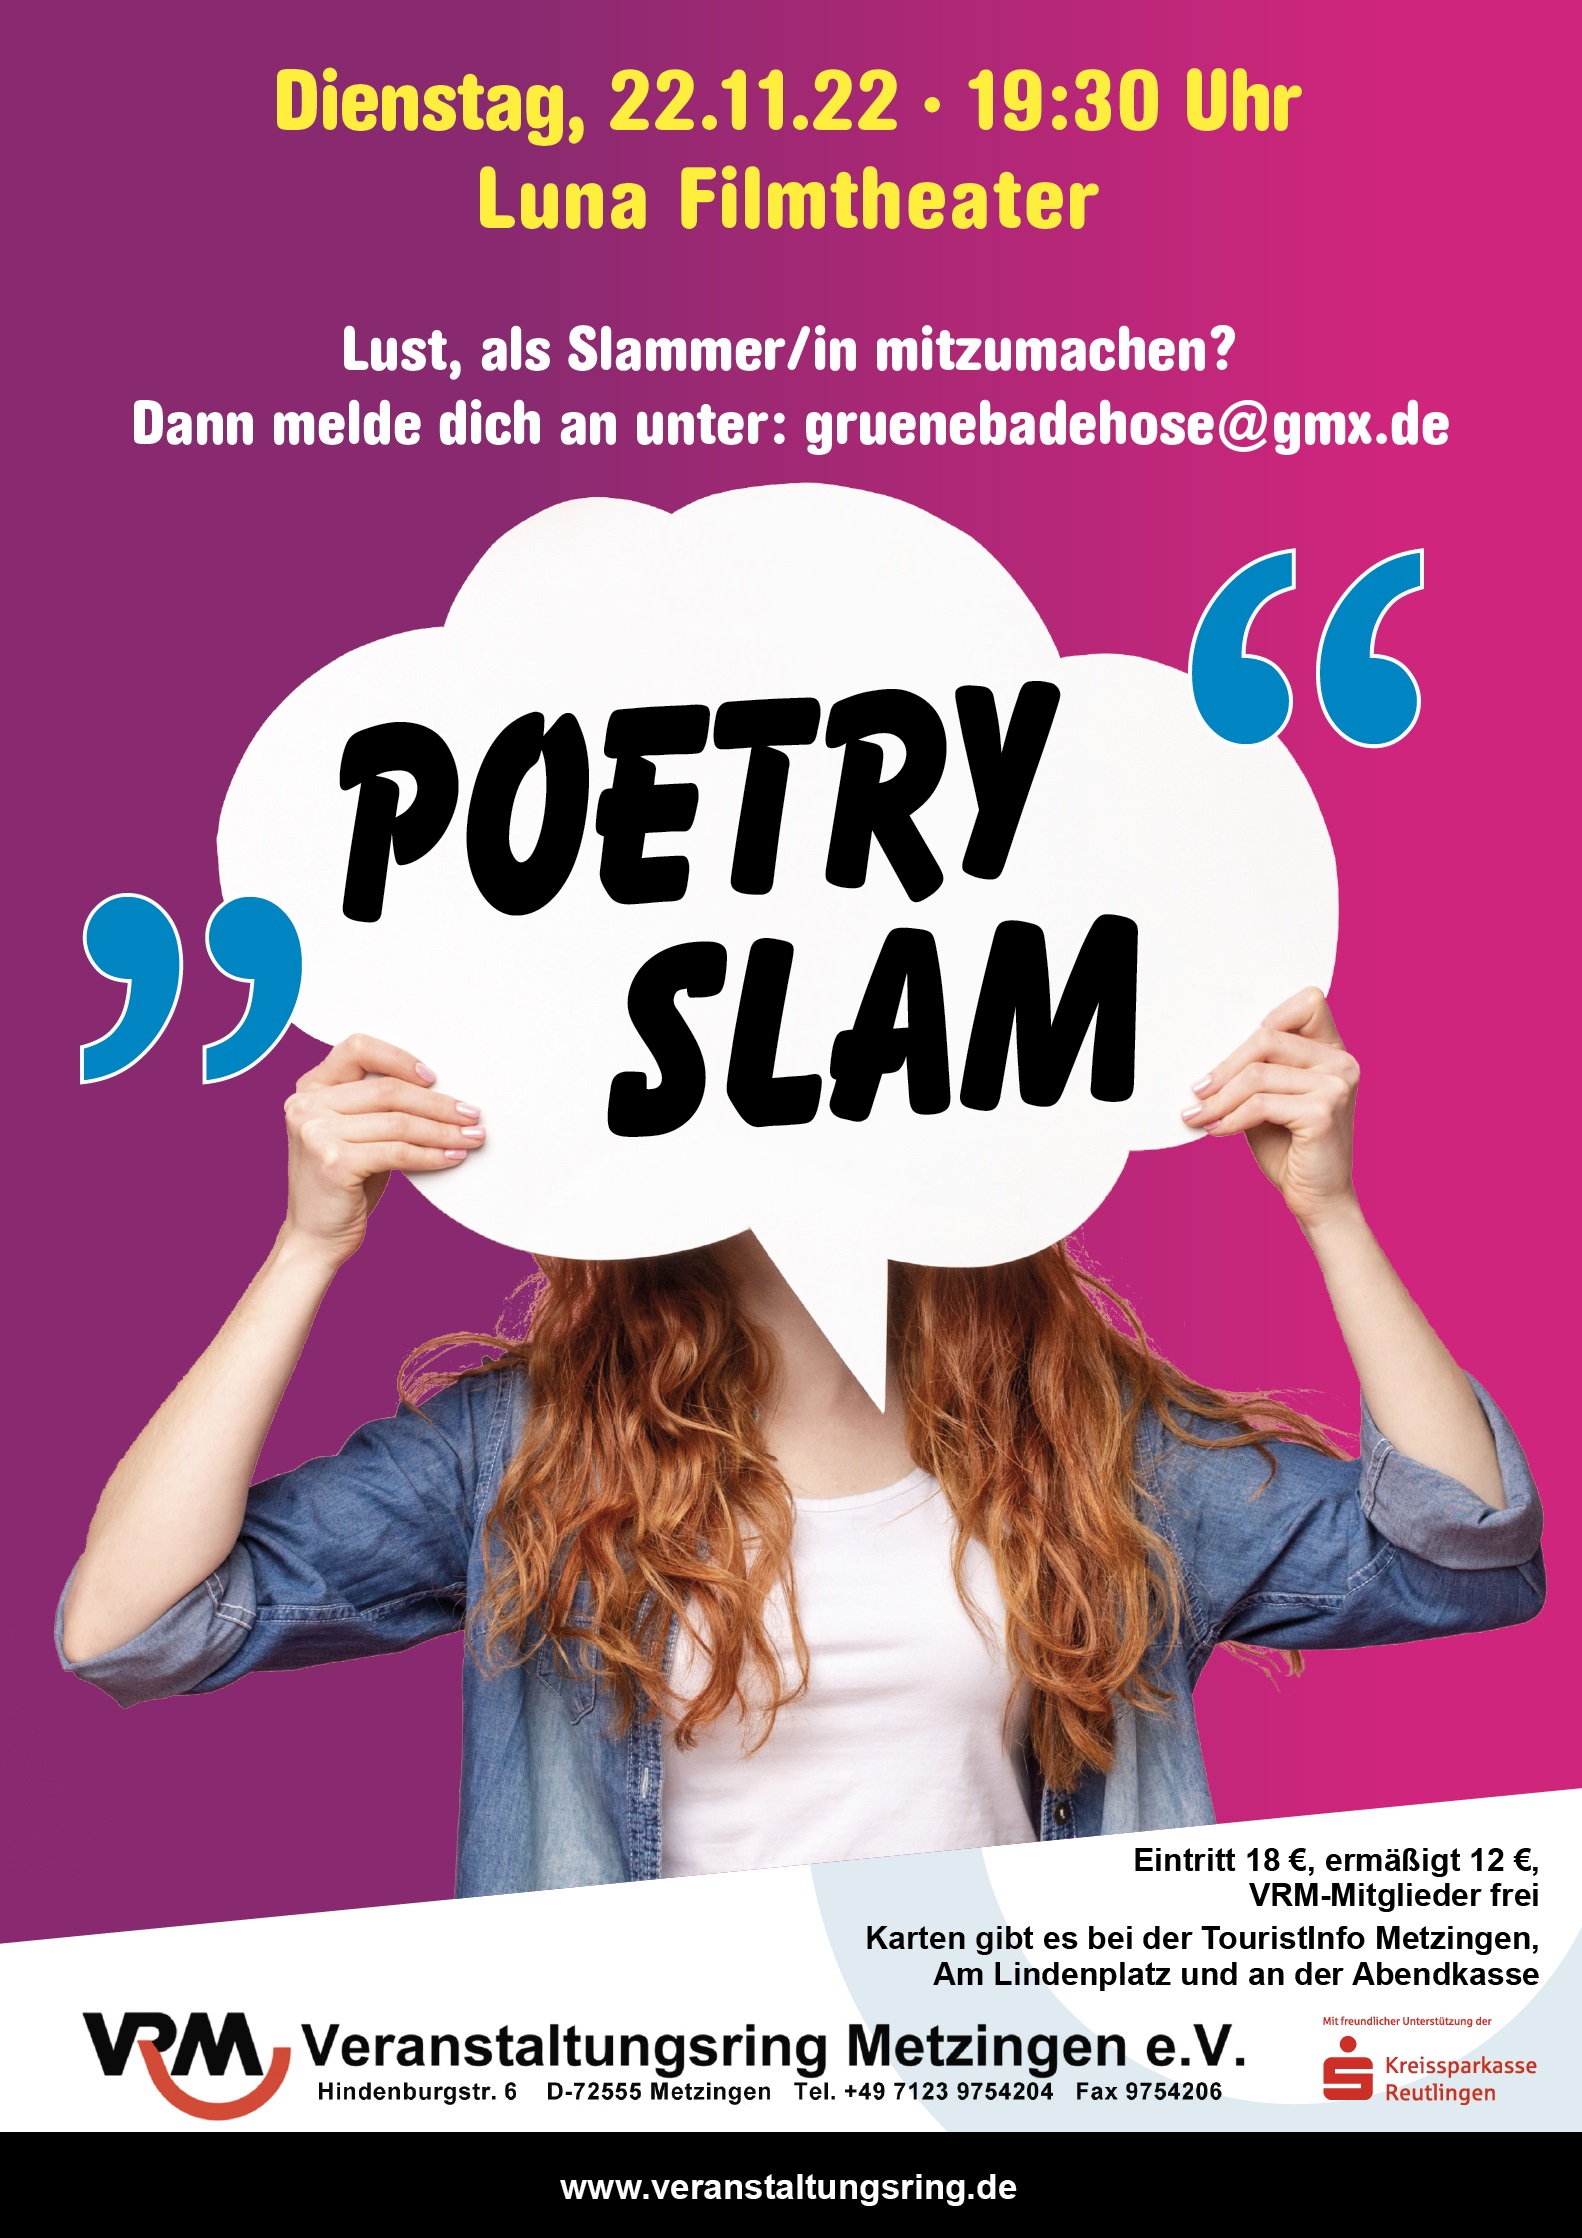 Herausgeber Walthers erster Poetry-Slam-Auftritt “eine Erfahrung”